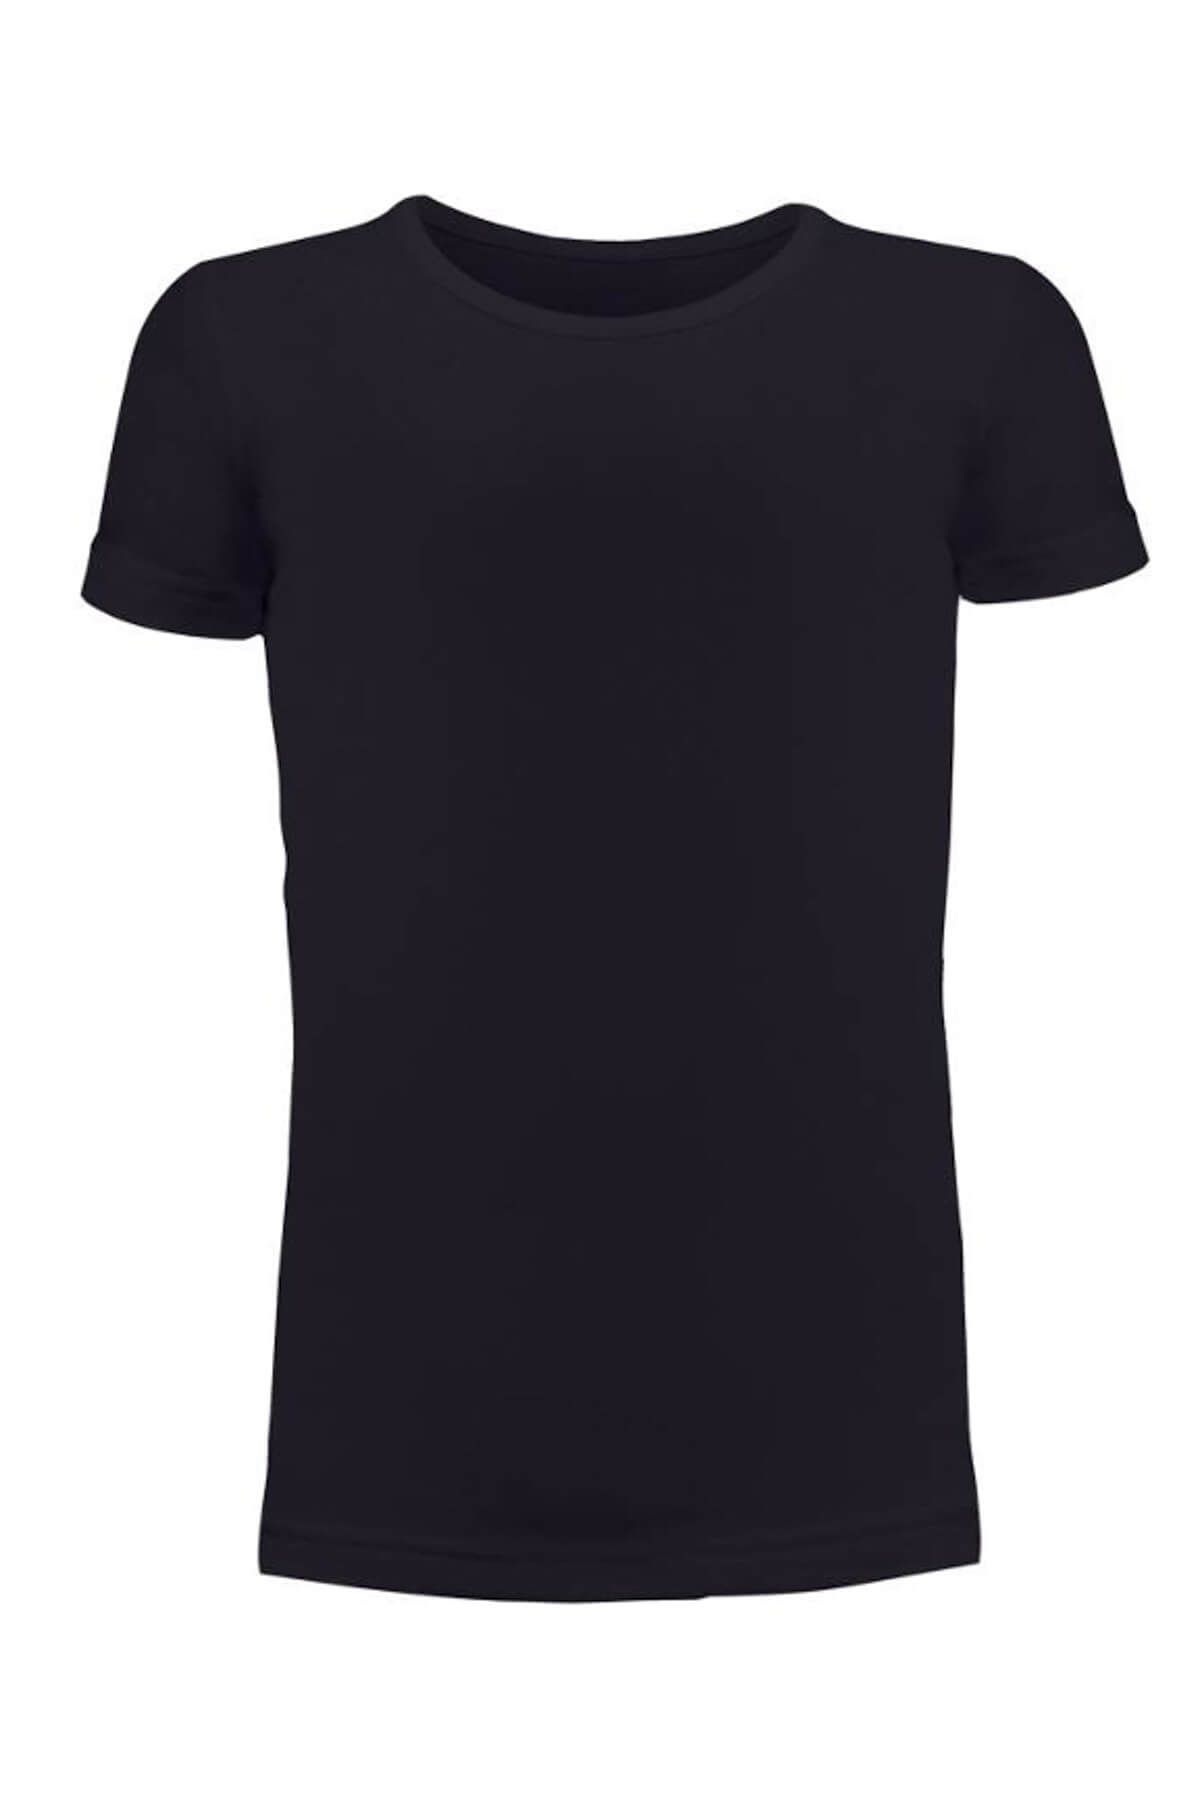 Blackspade Çocuk Siyah Termal T-shirt 1. Seviye 9299